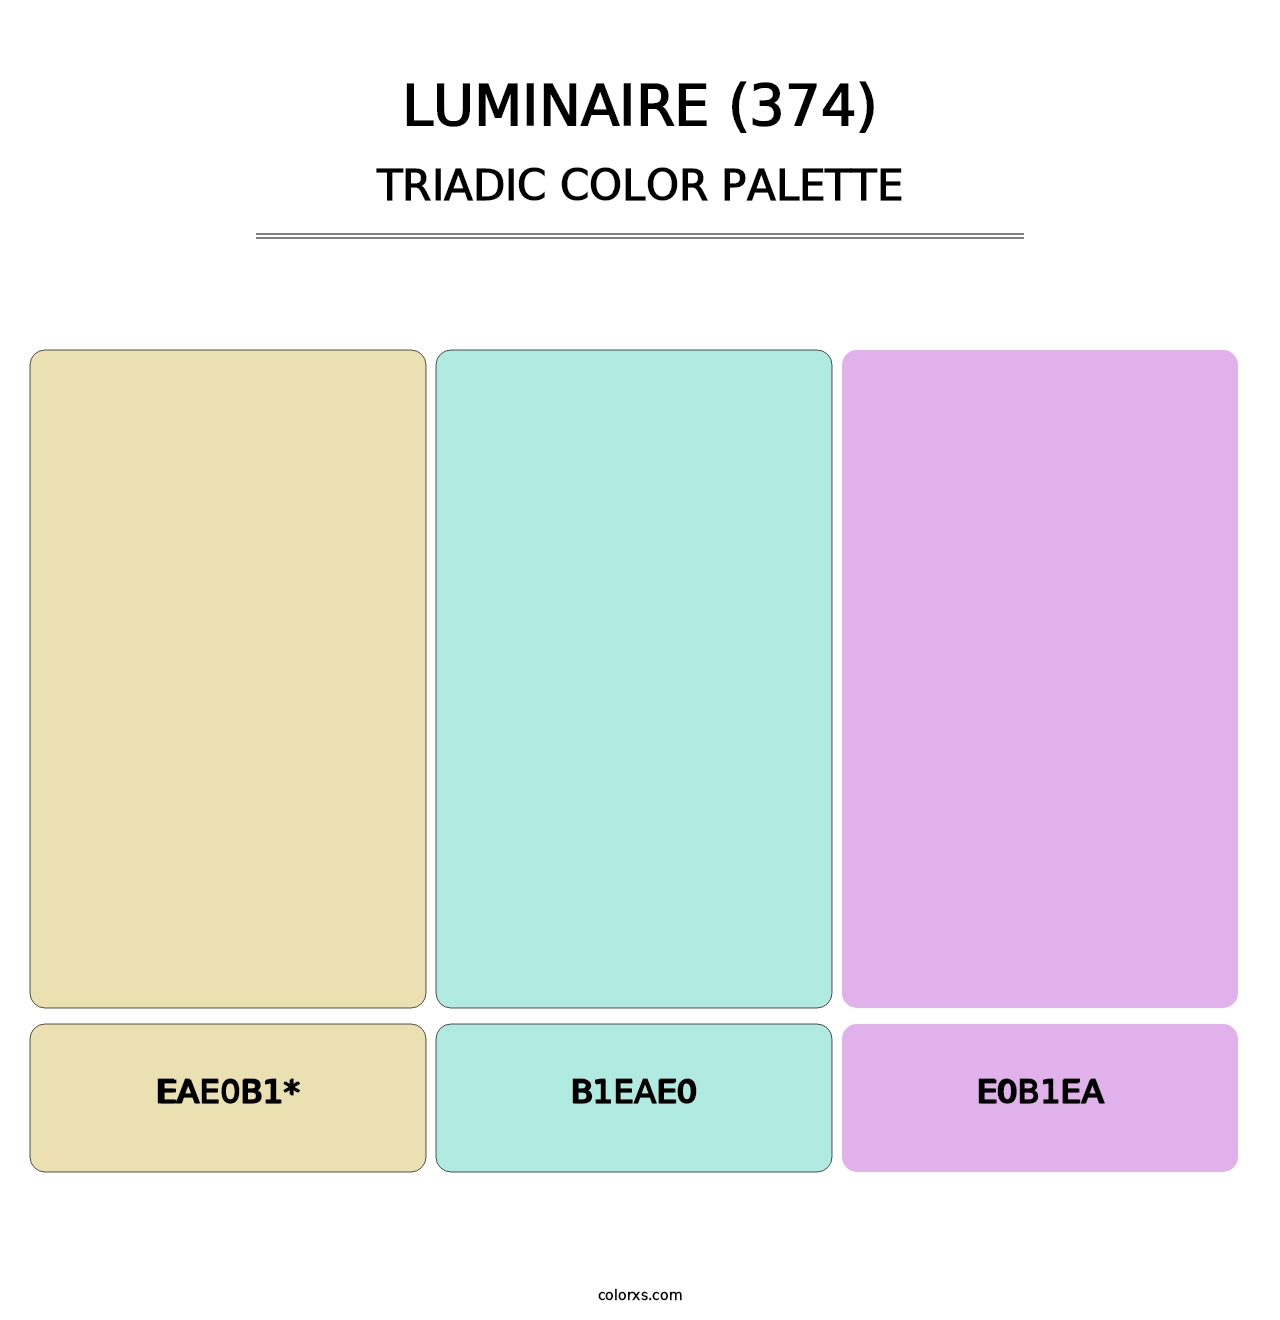 Luminaire (374) - Triadic Color Palette